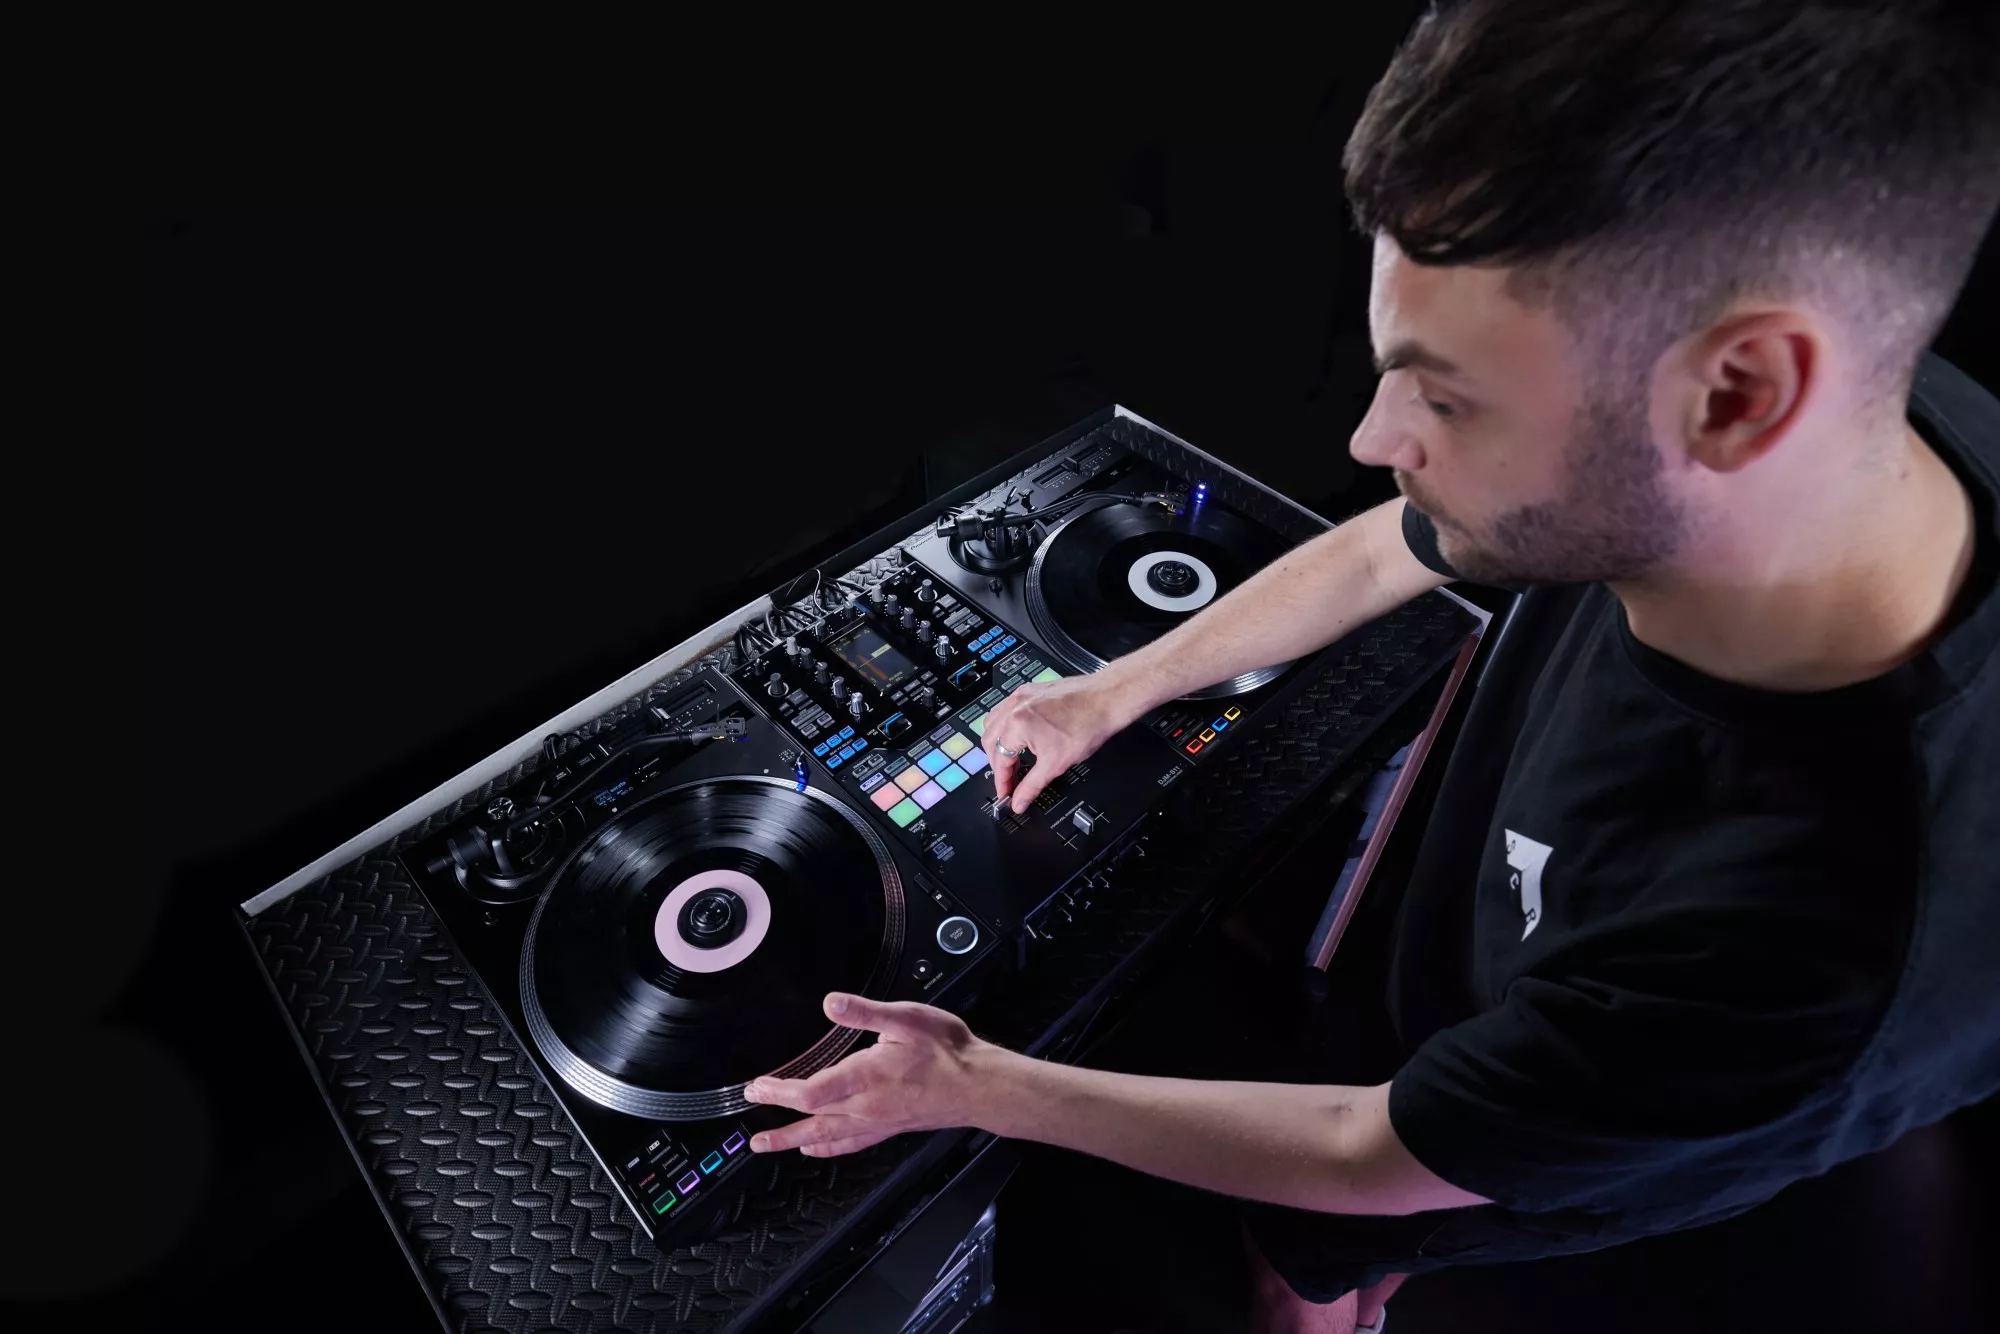 Pioneer DJ PLX-CRSS12 platine vinyle/contrôleur DJ